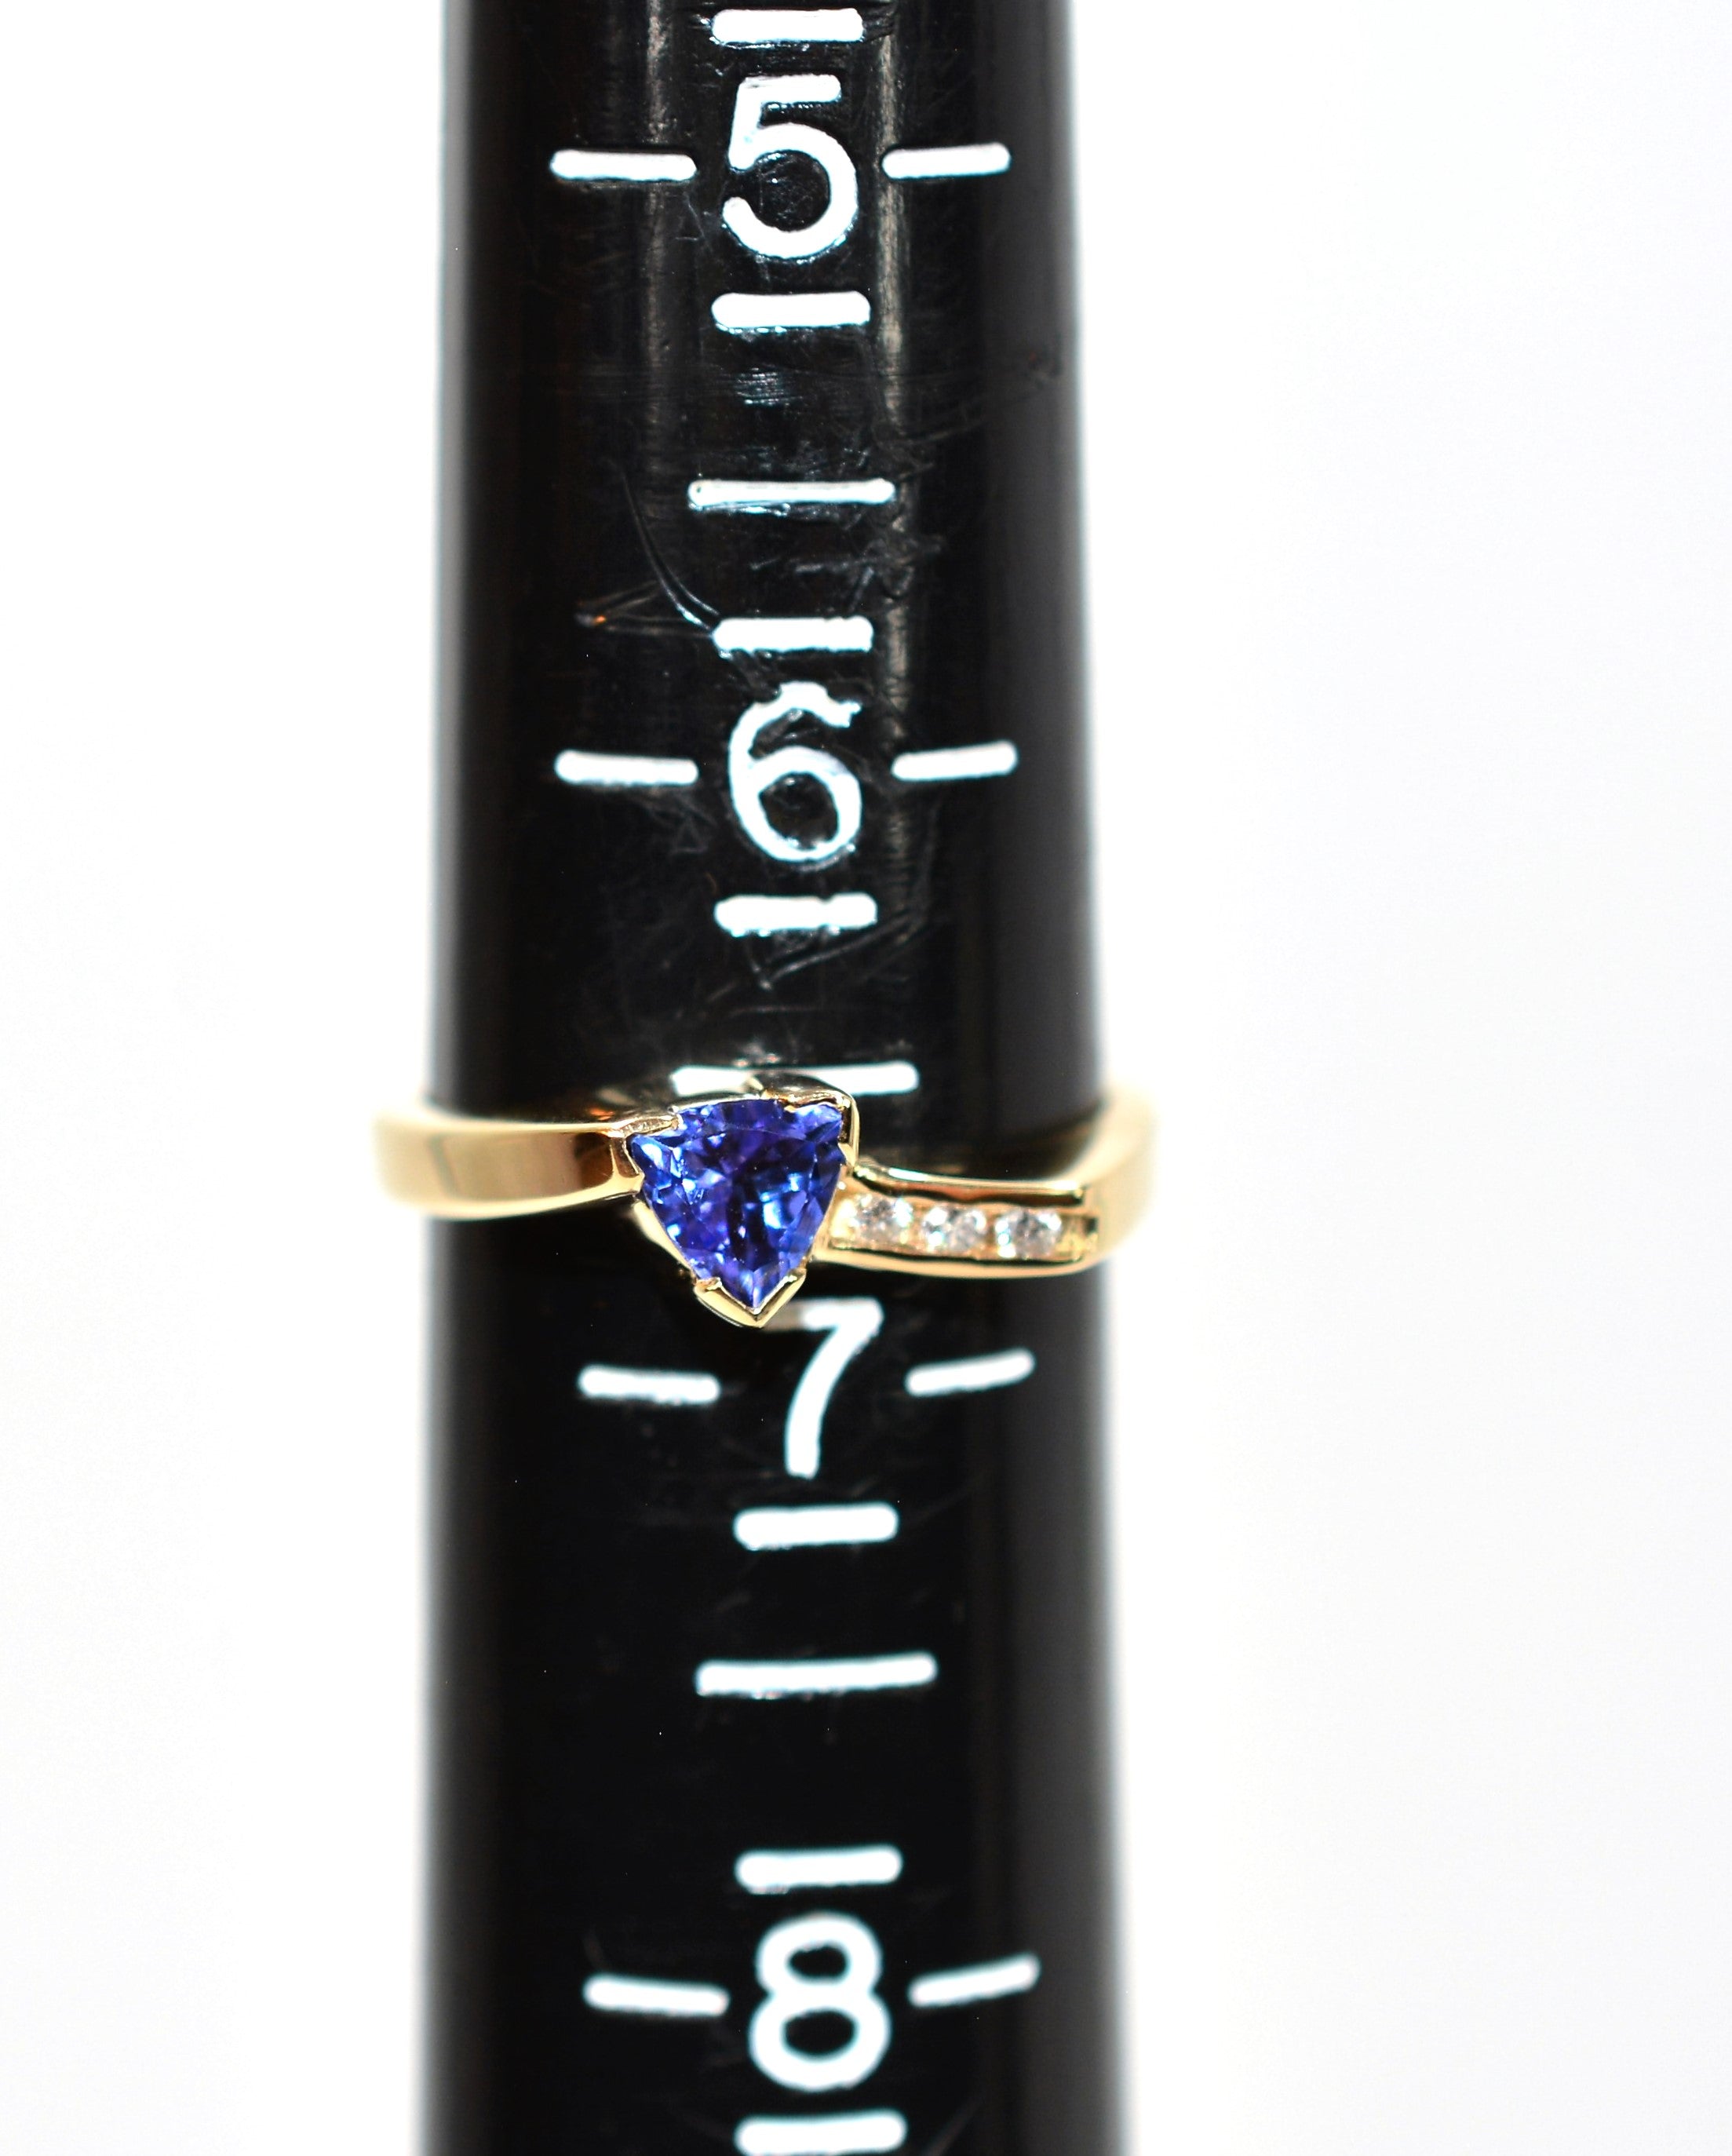 Natural Tanzanite & Diamond Ring 14K Solid Gold .56tcw Gemstone Ring Birthstone Ring Statement Ring Cocktail Ring Tanzanite Ring Estate